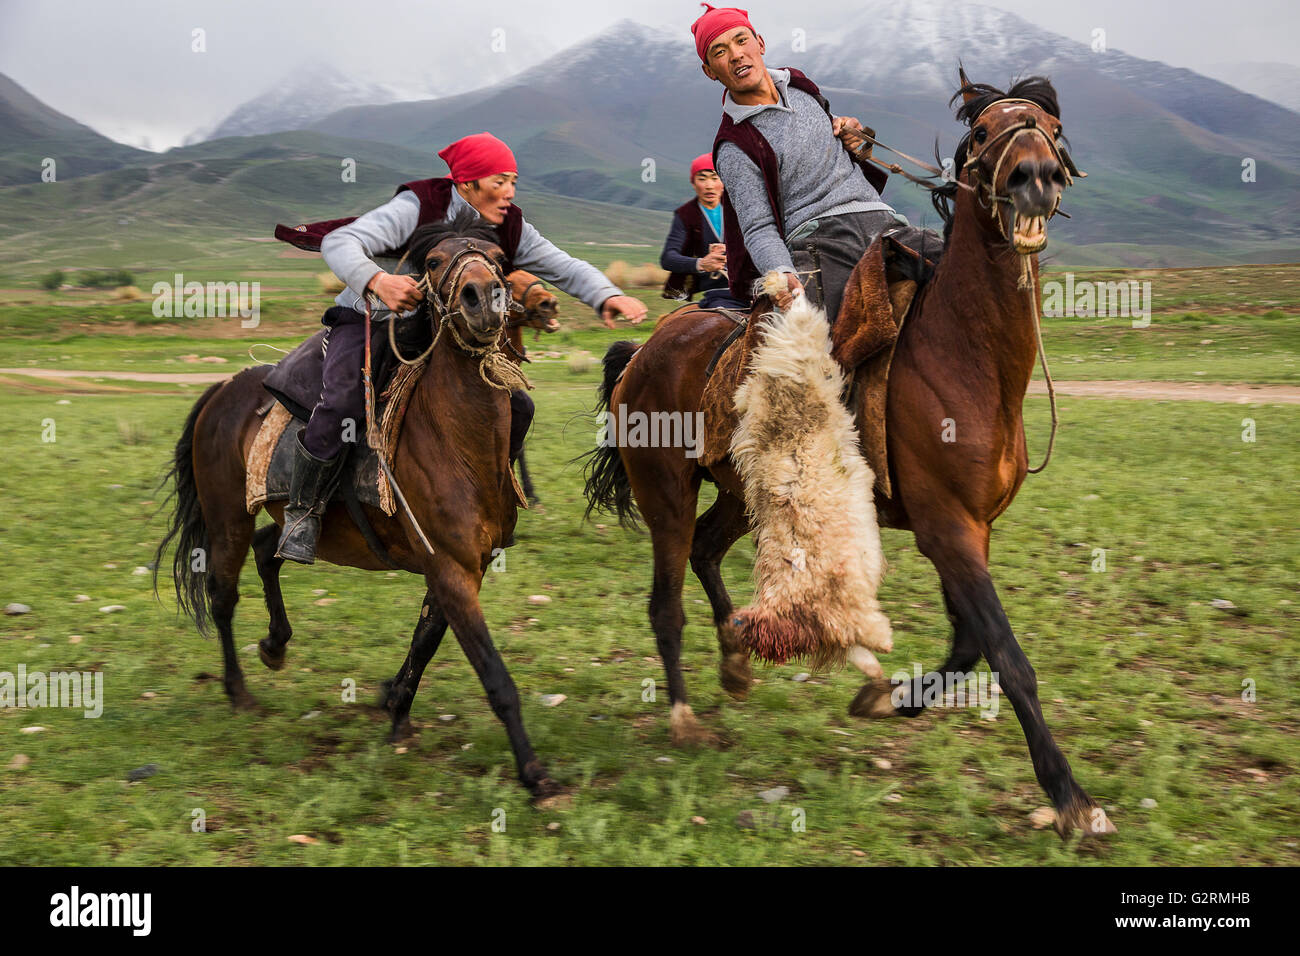 Jeux cheval nomade traditionnel connu aussi sous le nom de polo kokpar, chèvre ou buzkashi, dans le lac Issyk Kul, le Kirghizistan. Banque D'Images